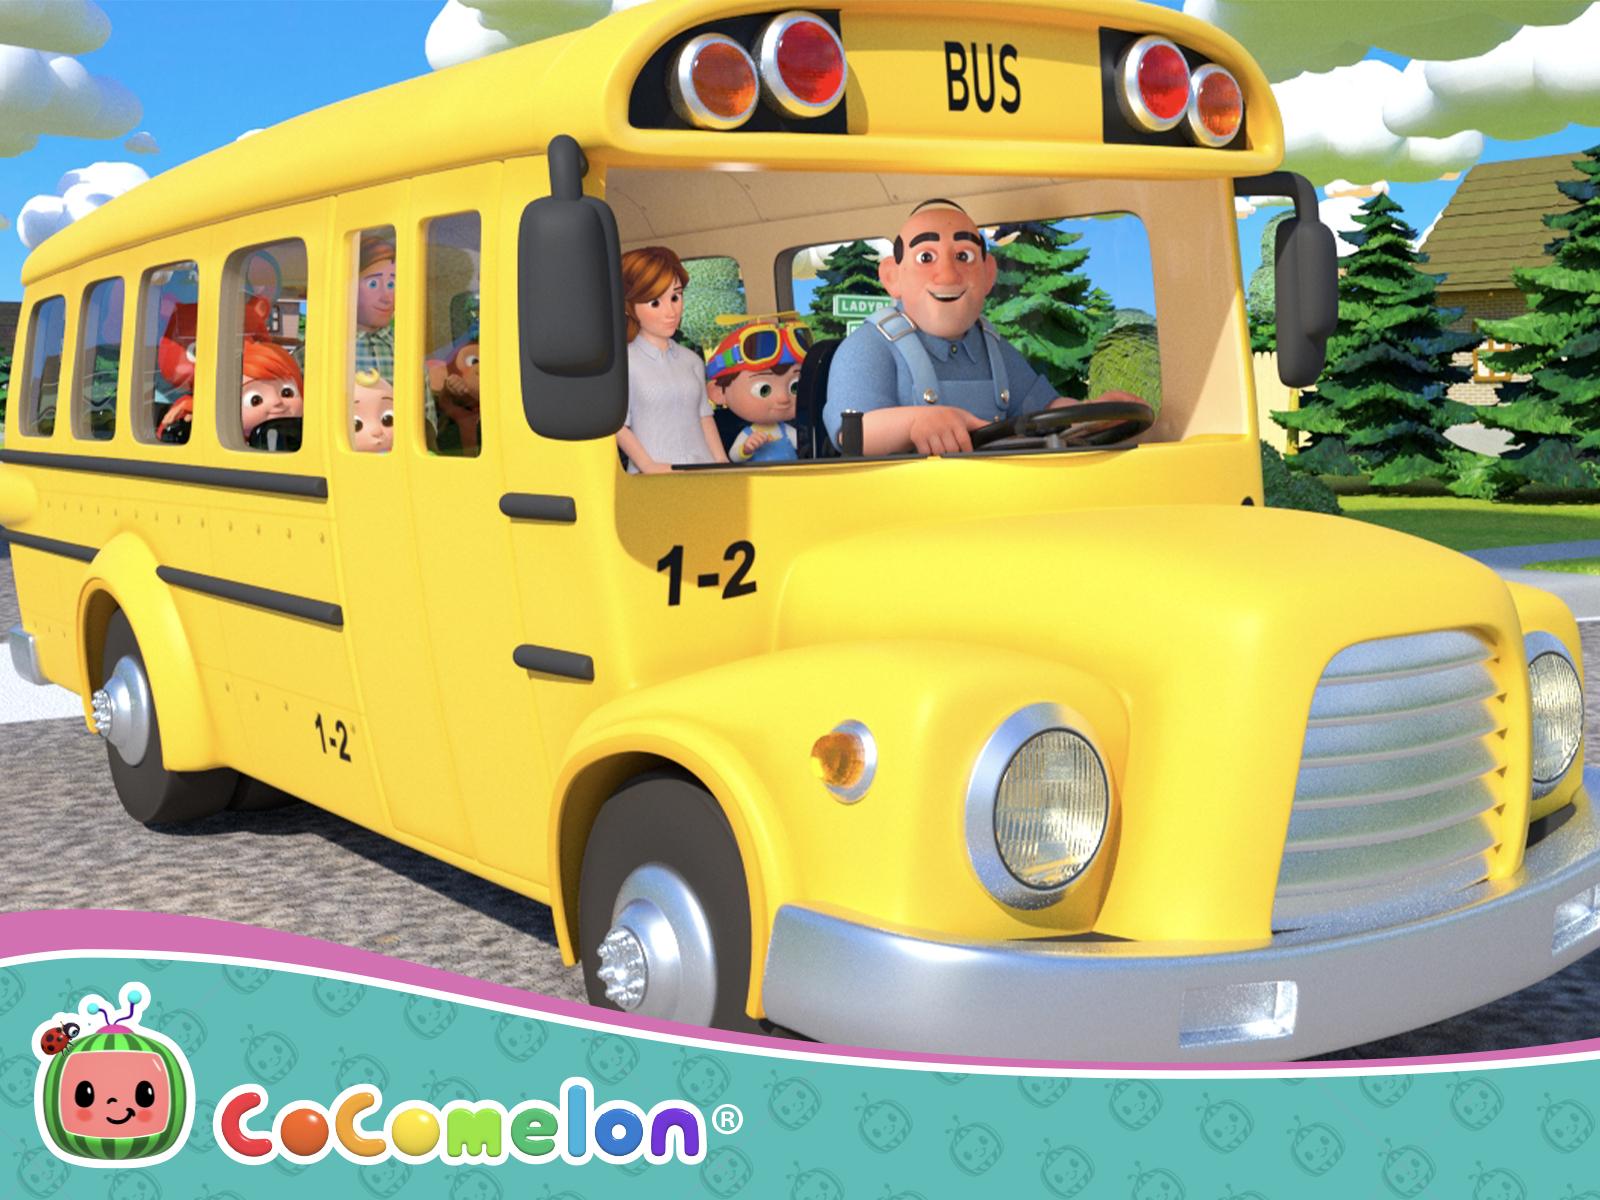 Cocomelon Bus Images